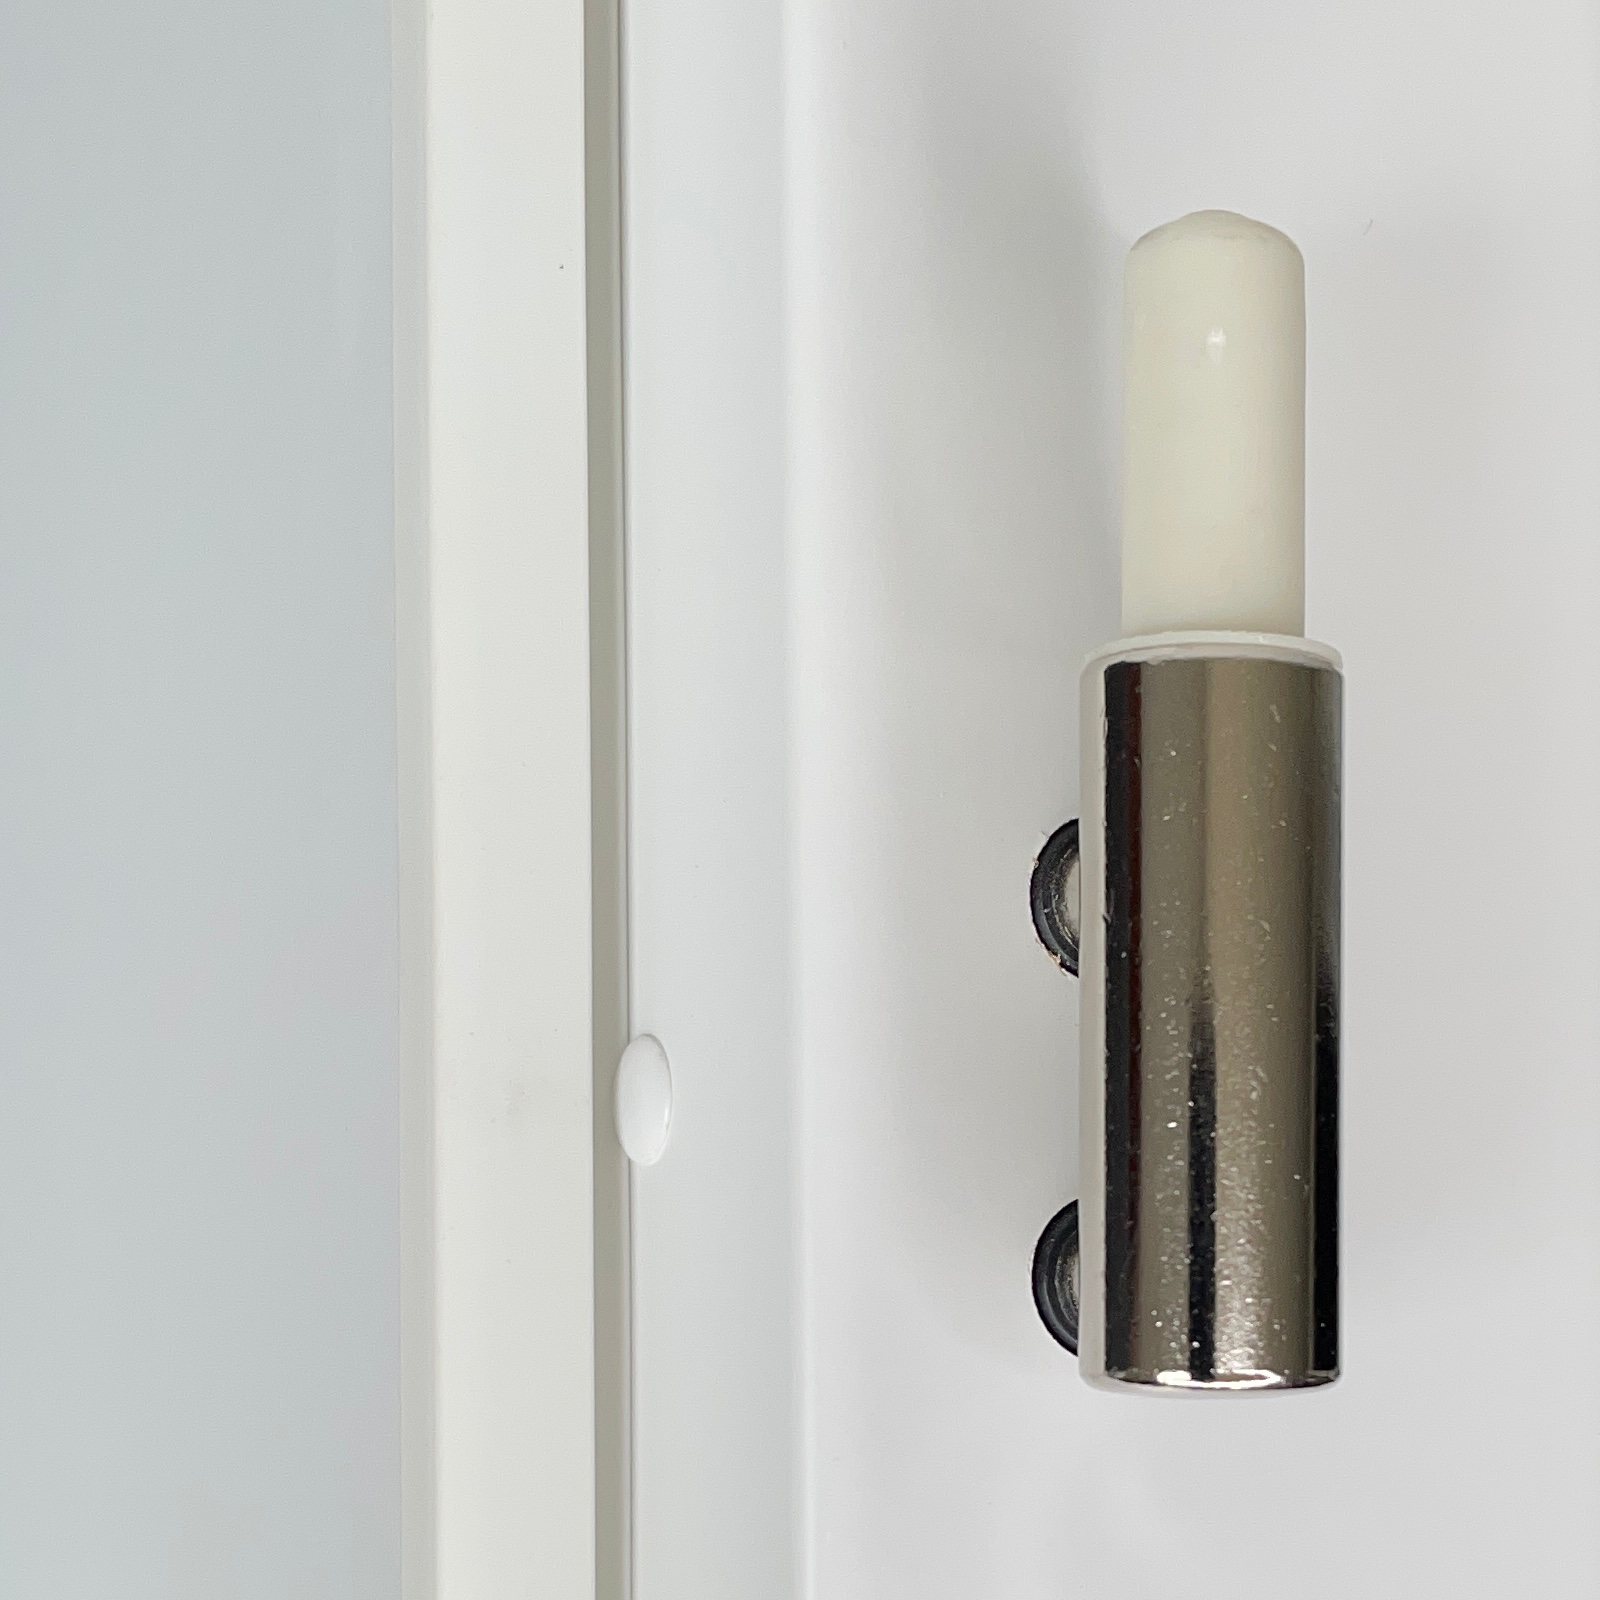 Zimmertür mit Zarge und Lichtausschnitt brillant-weiß 3 Rillen Designkante - Modell Designtür Q33LAM